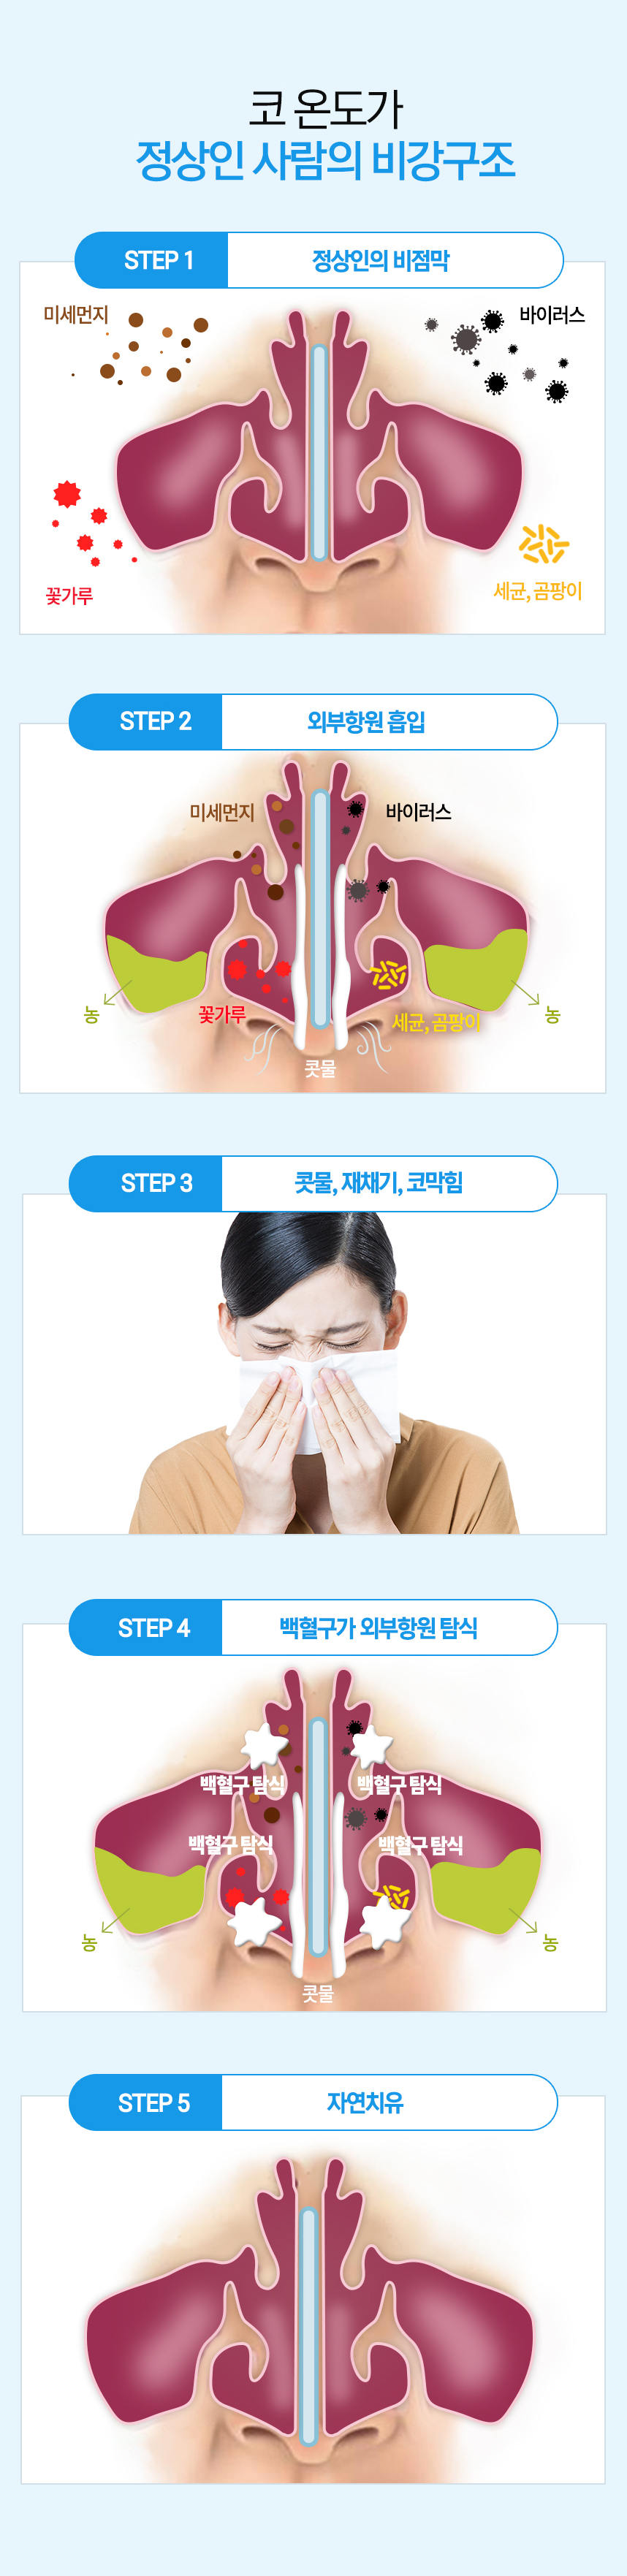 코 온도가 정상인 사람의 비강구조 1. 정상인 / 비염환자의 비점막 2. 외부항원 흡입 (미세먼지, 바이러스, 꽃가루, 세균, 곰팡이) 3. 콧물, 재채기, 코막힘 4. 백혈구가 외부항원 탐식 5. 자연치유